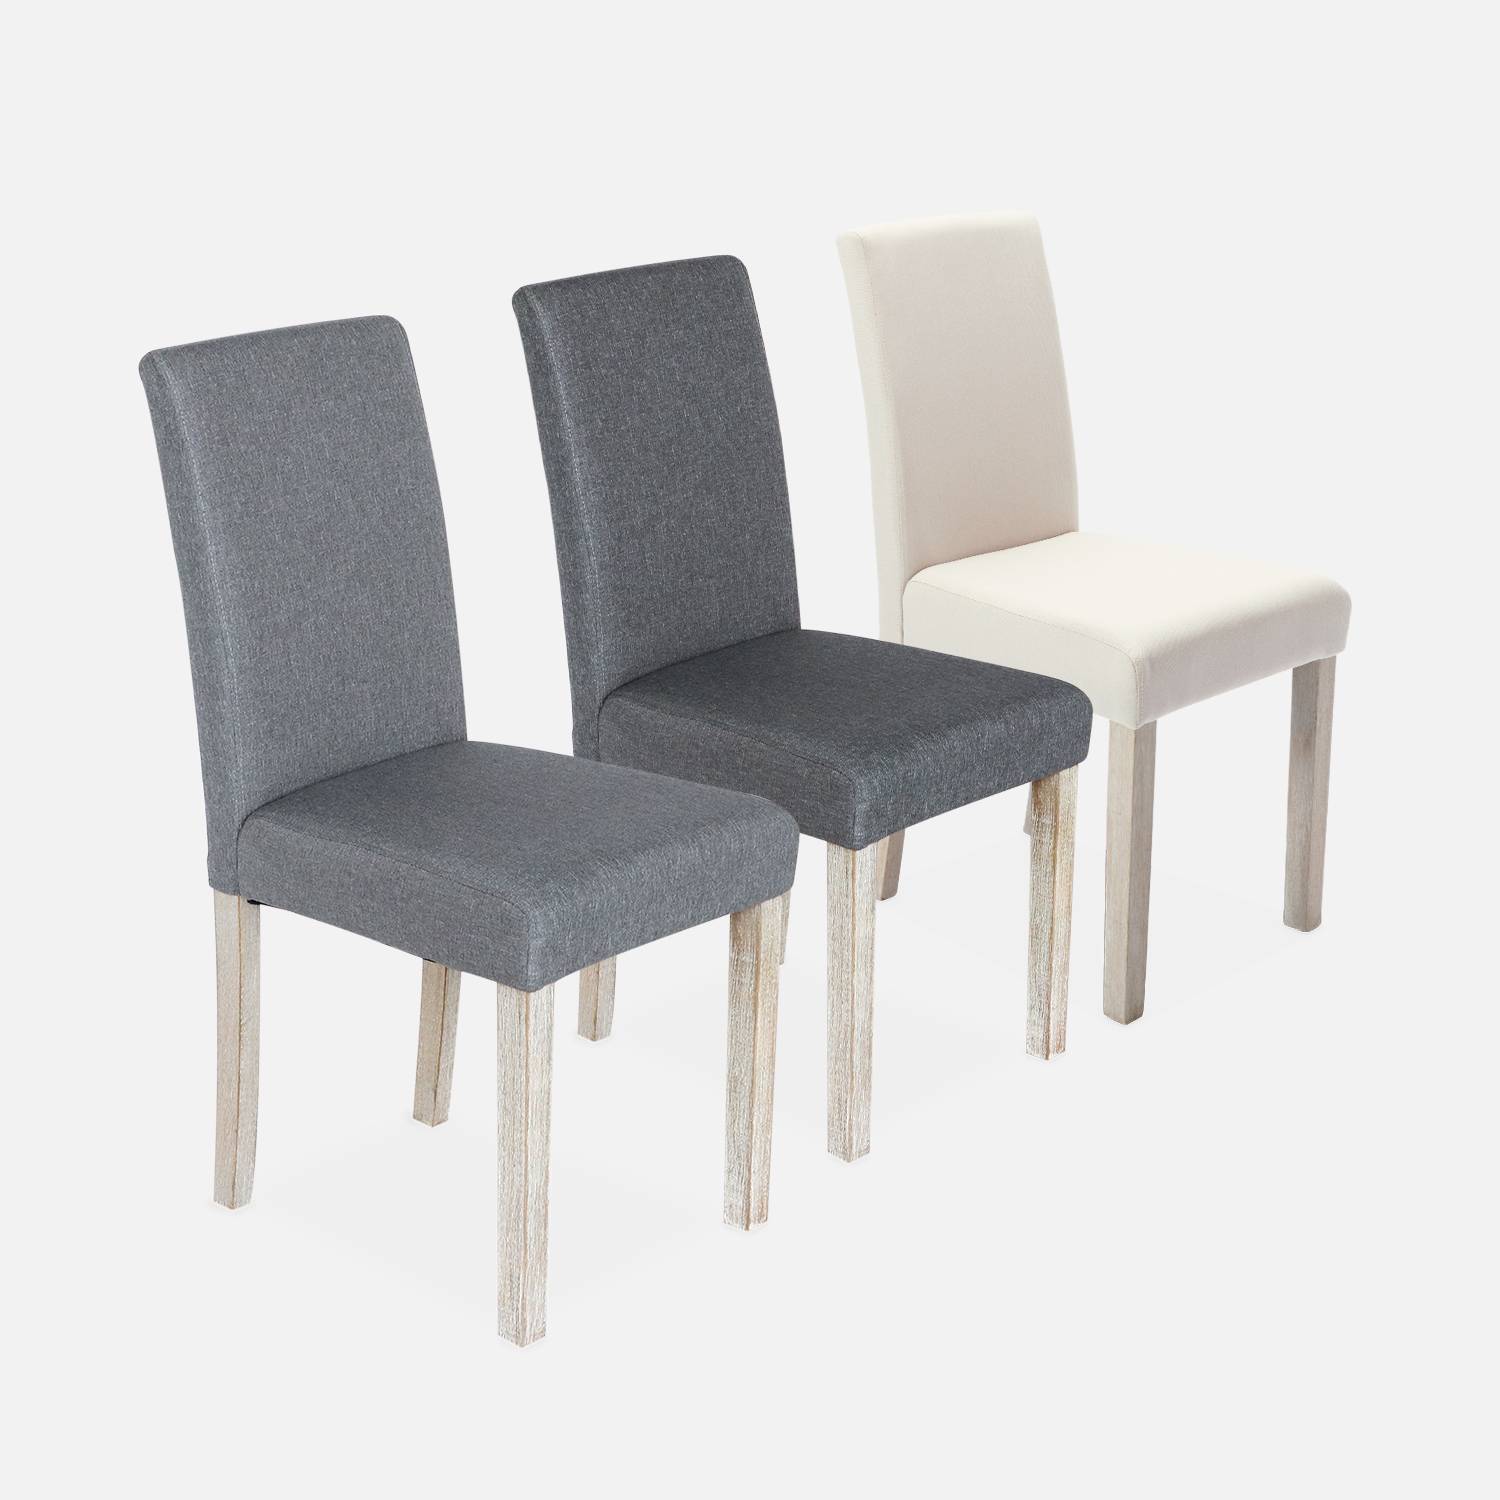 Lote de 4 sillas - Rita - sillas de tela, patas madera lacada  Photo5